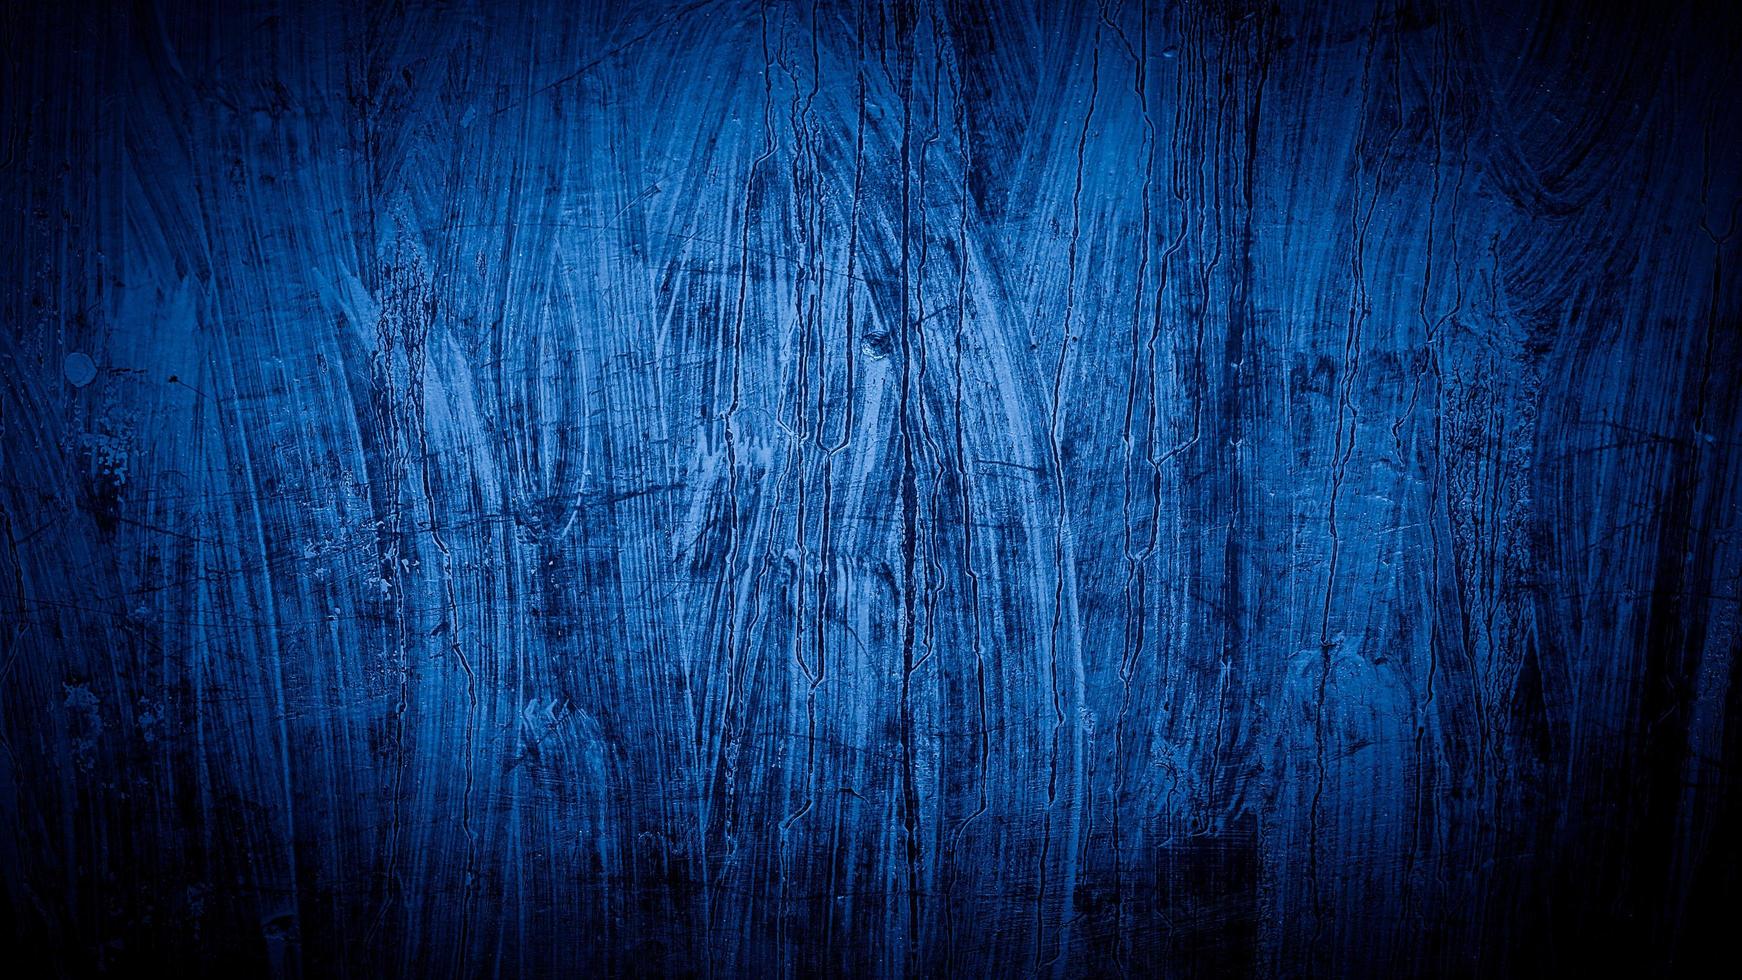 grunge achtergrond van blauwe muur kleur foto